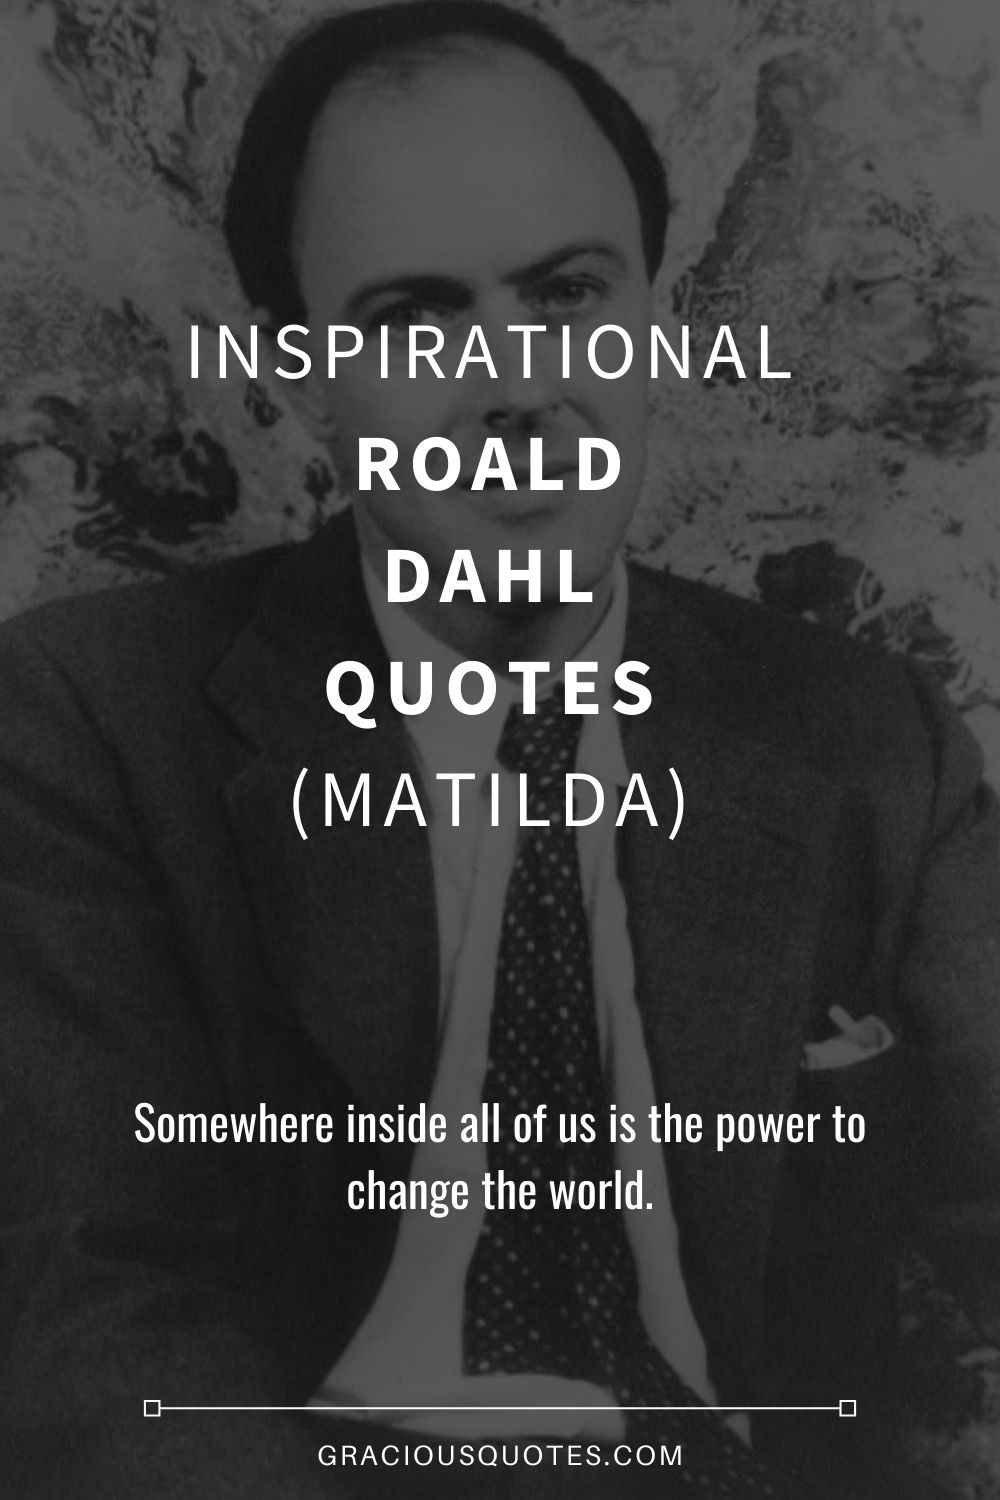 Inspirational Roald Dahl Quotes (MATILDA) - Gracious Quotes